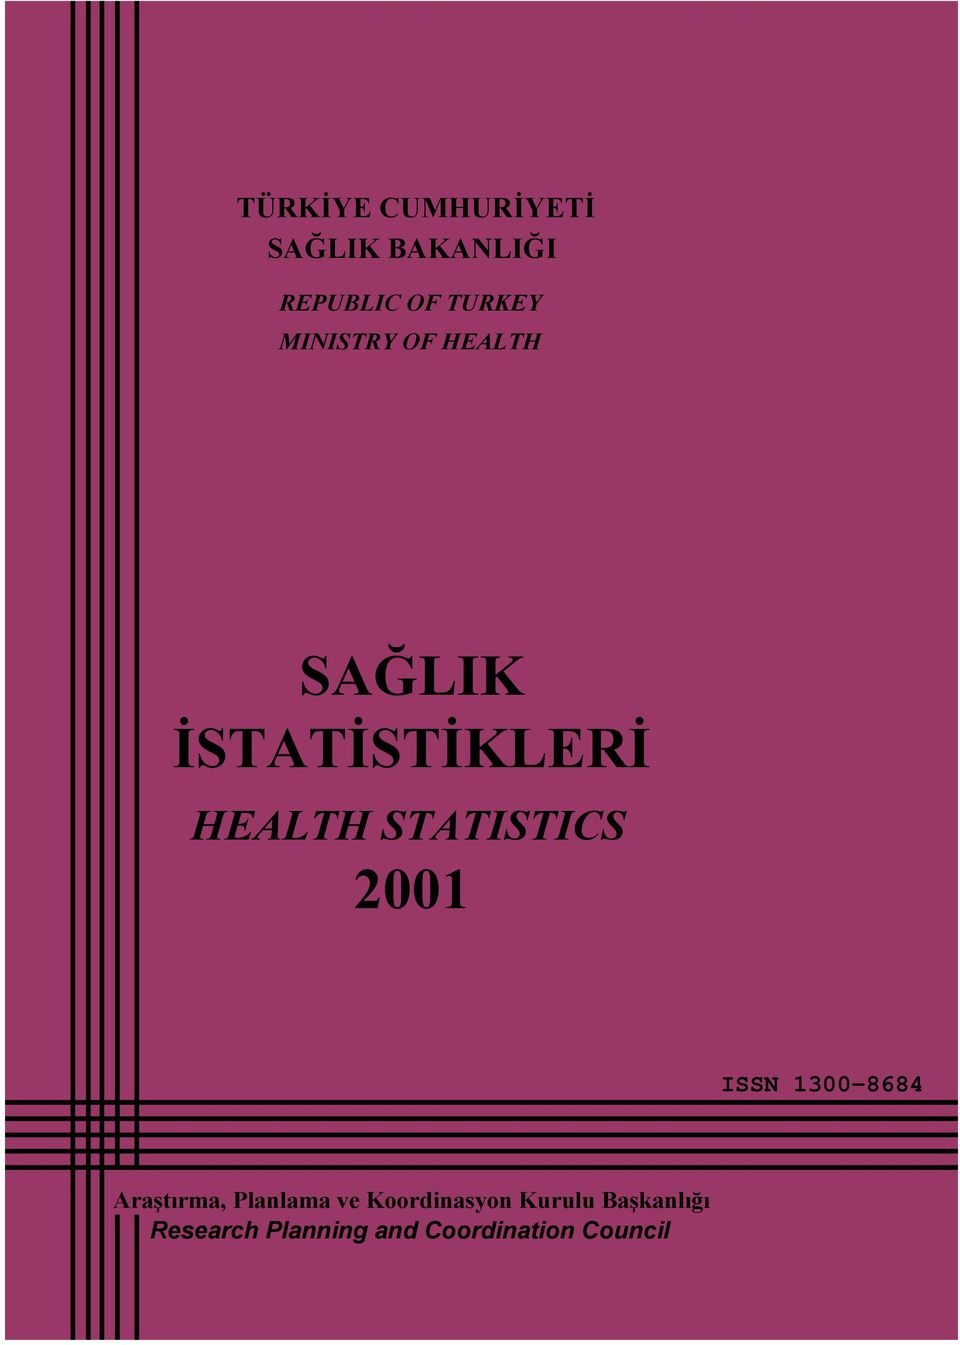 STATISTICS 2001 ISSN 1300-8684 Araştırma, Planlama ve